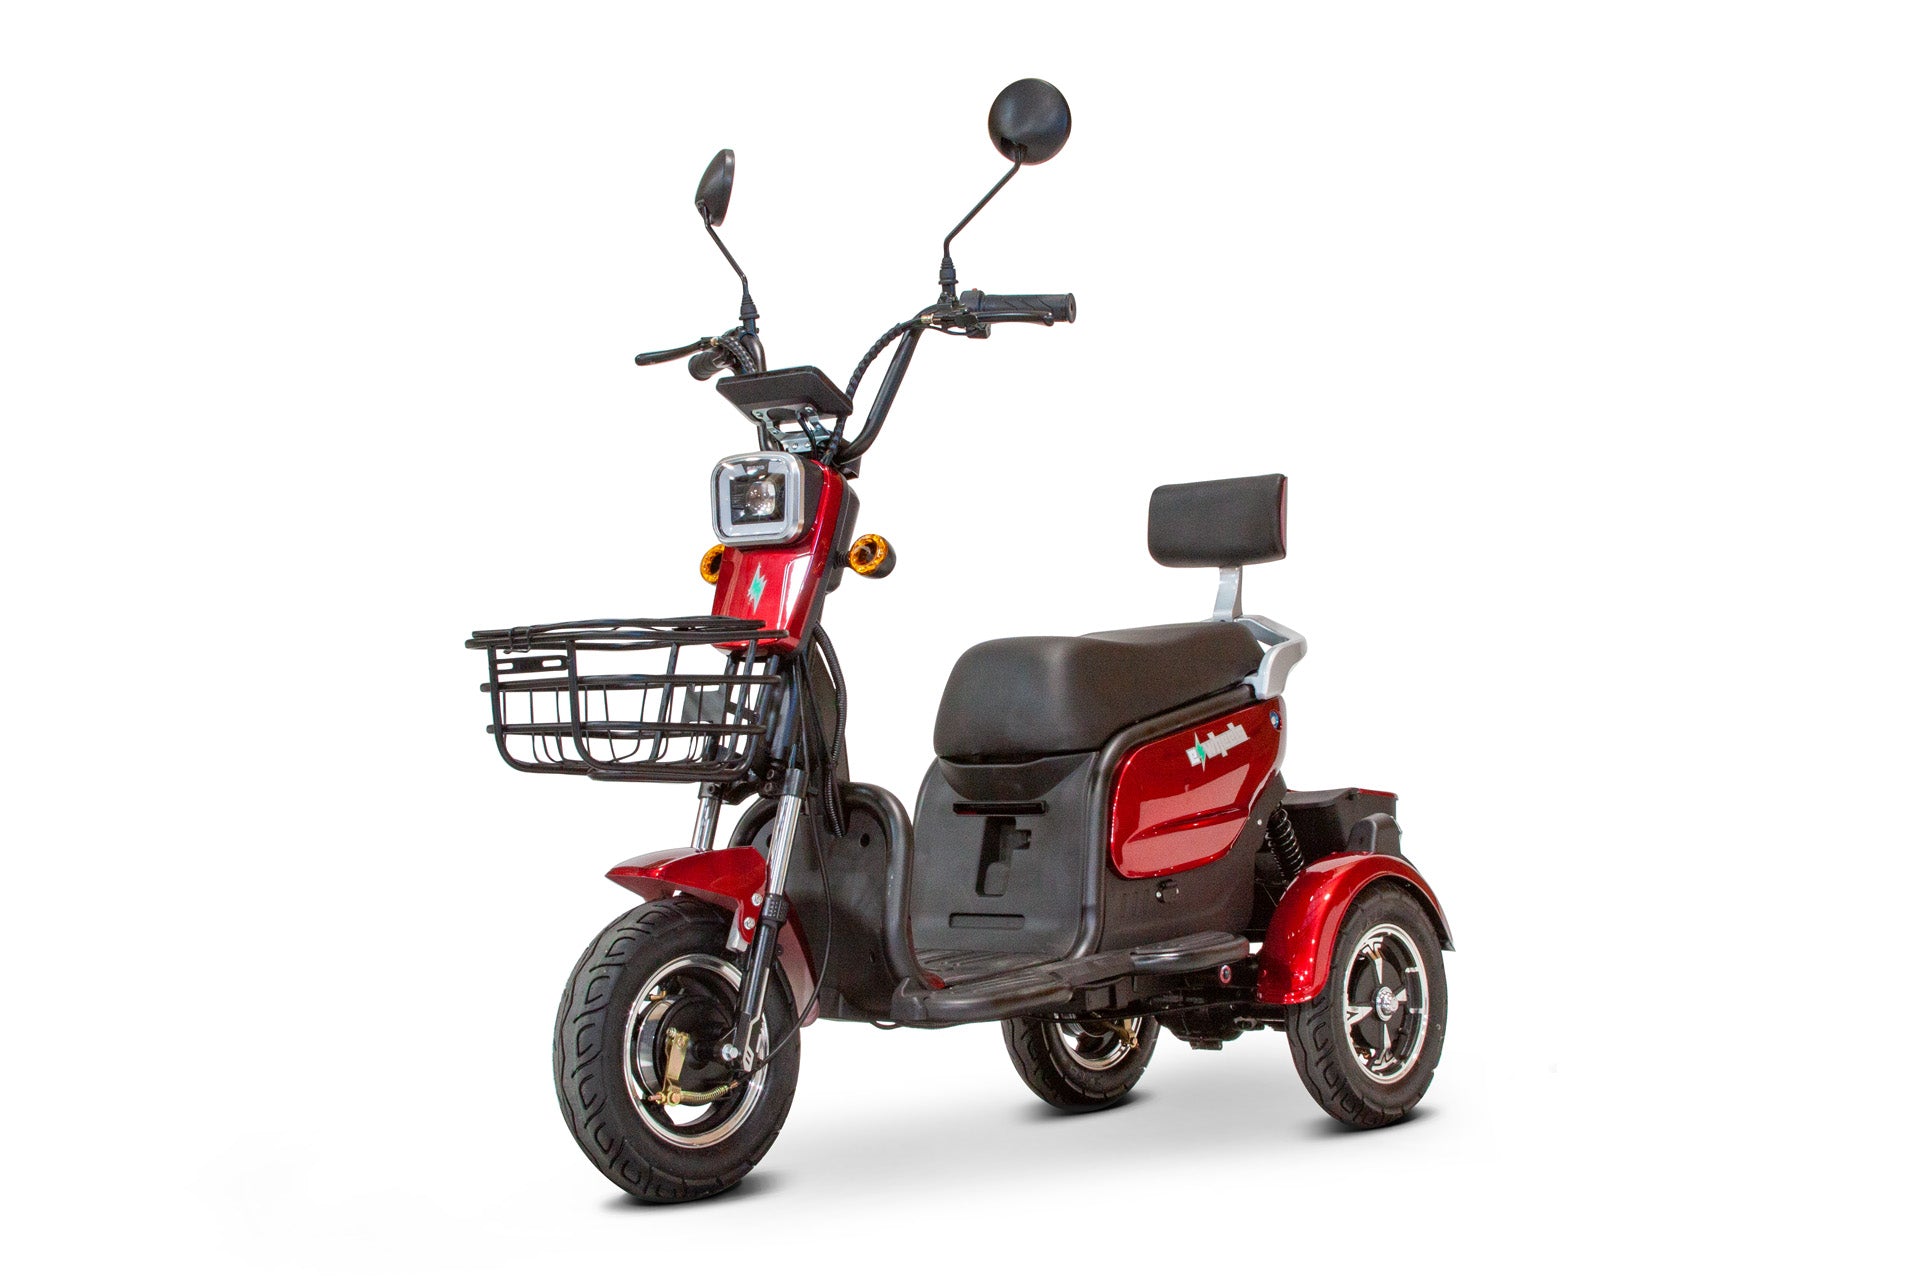 EW-12 500W 3 Wheels Scooter with 3 Storage Areas